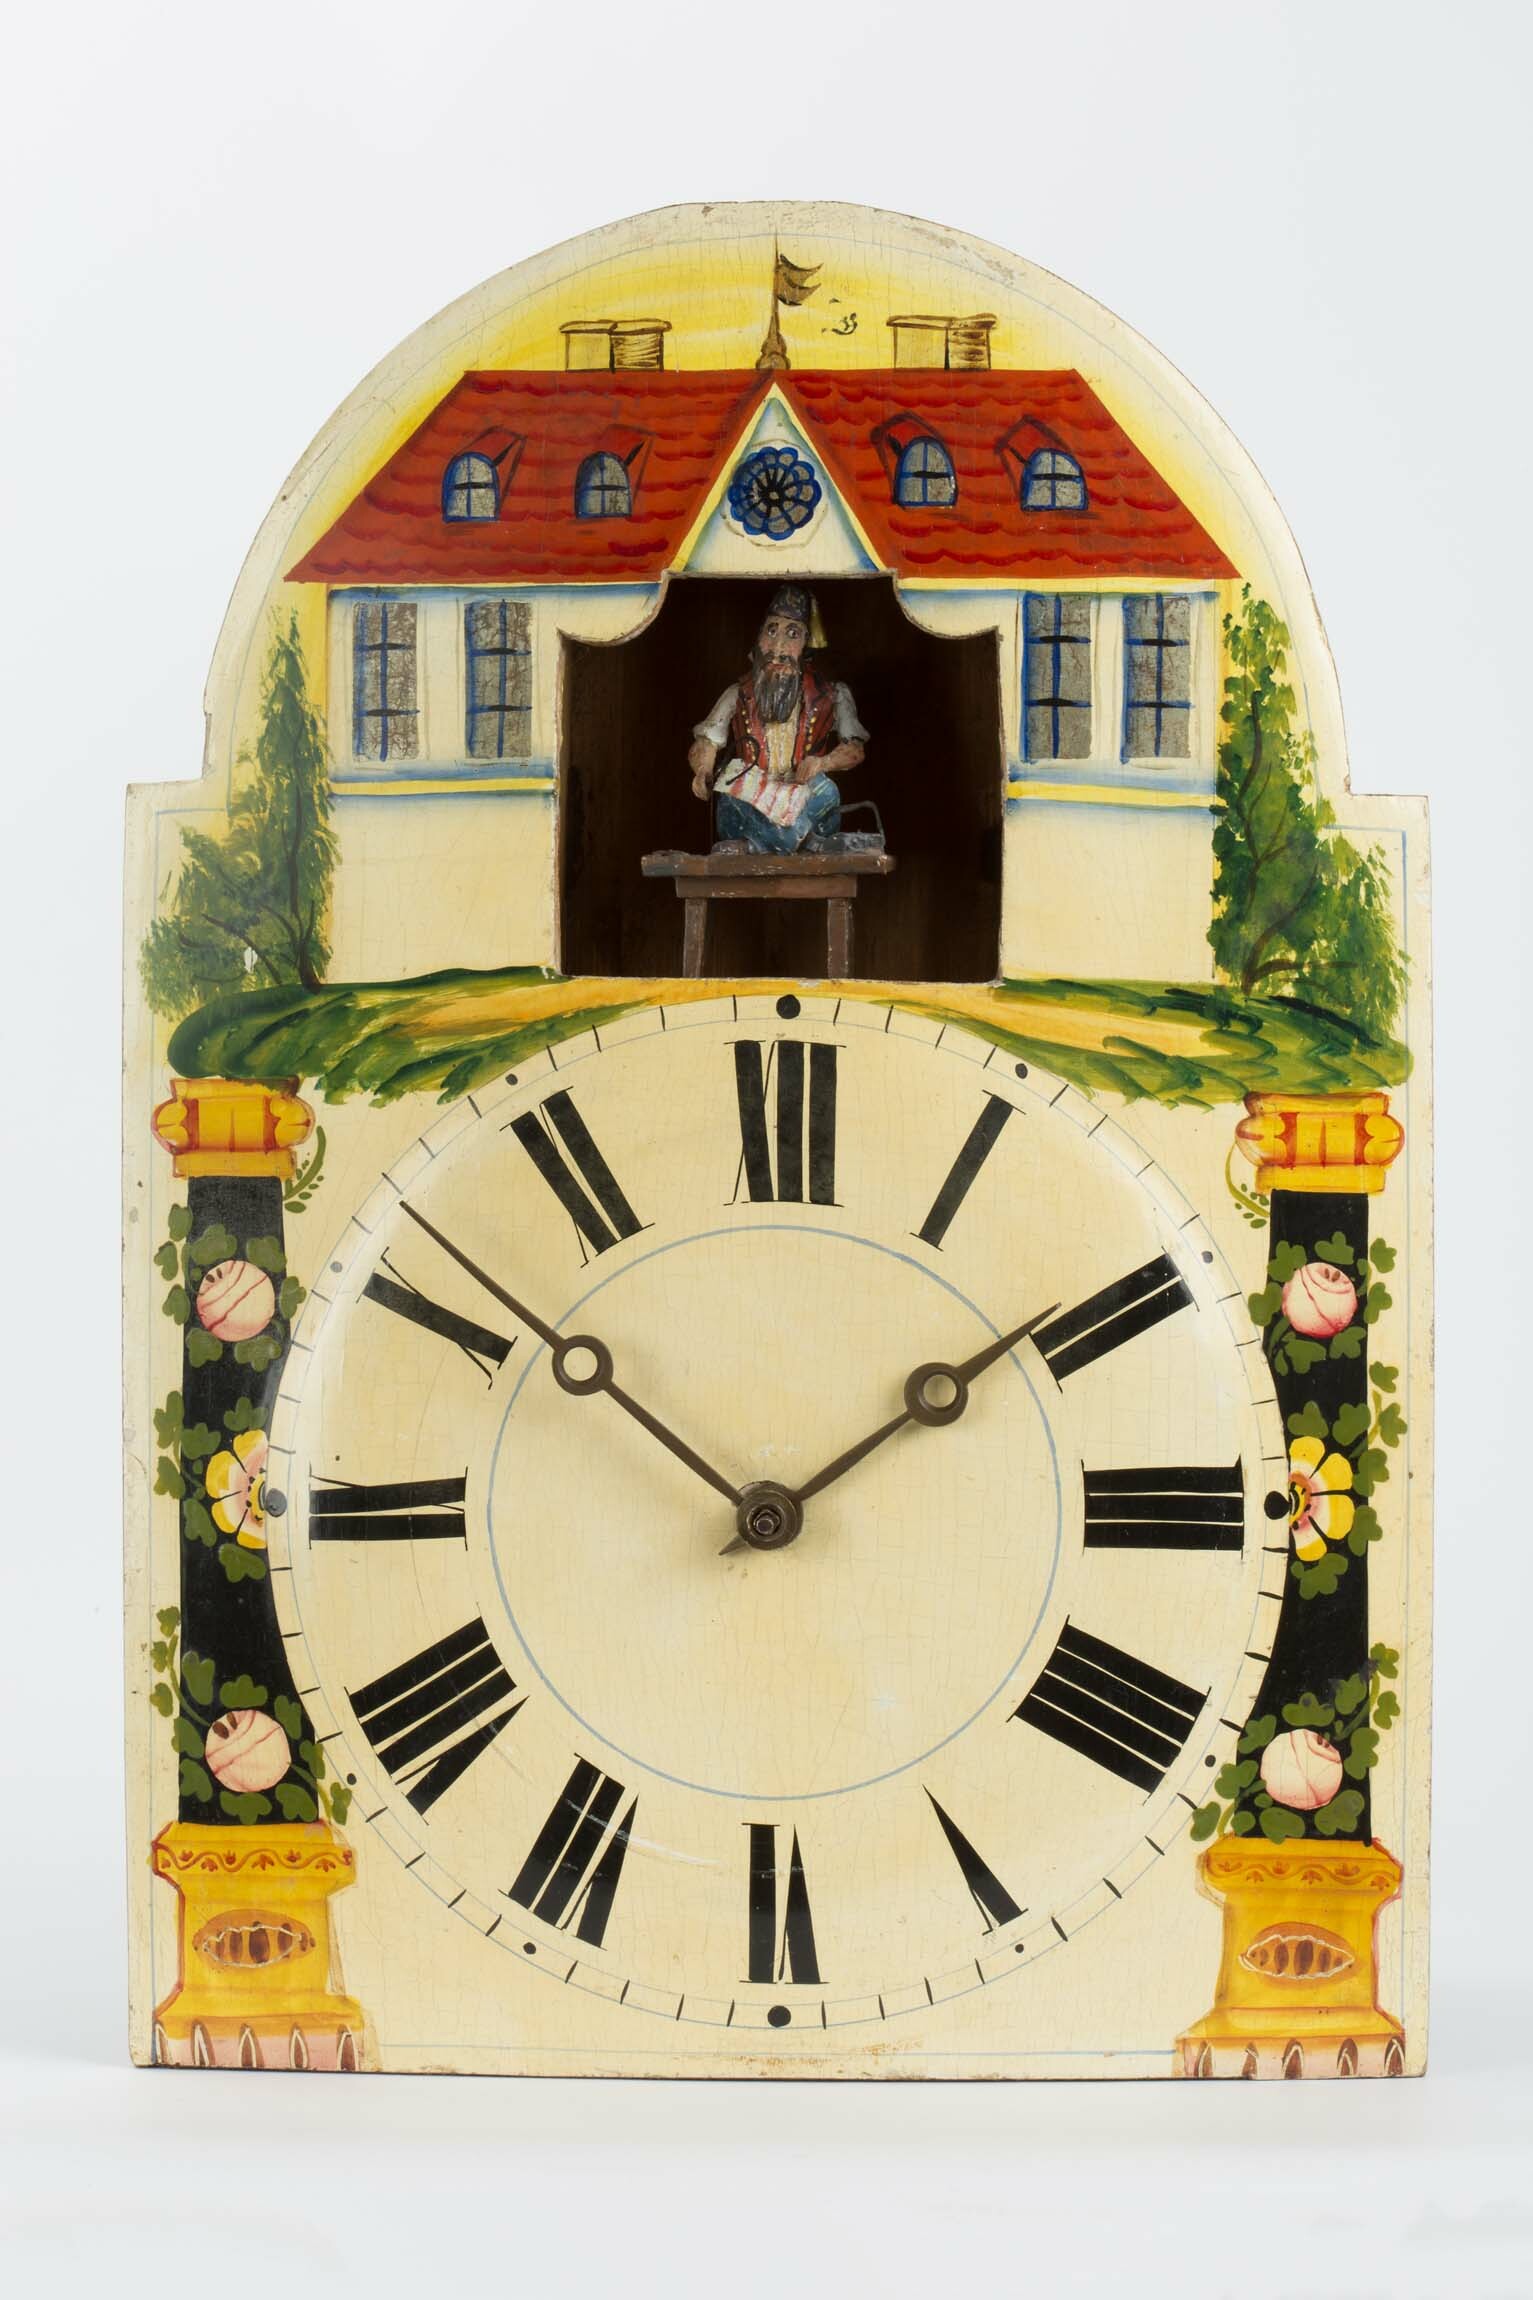 Lackschilduhr mit "Schneider", Georg Schildecker, Gütenbach, Mitte des 19. Jahrhunderts (Deutsches Uhrenmuseum CC BY-SA)